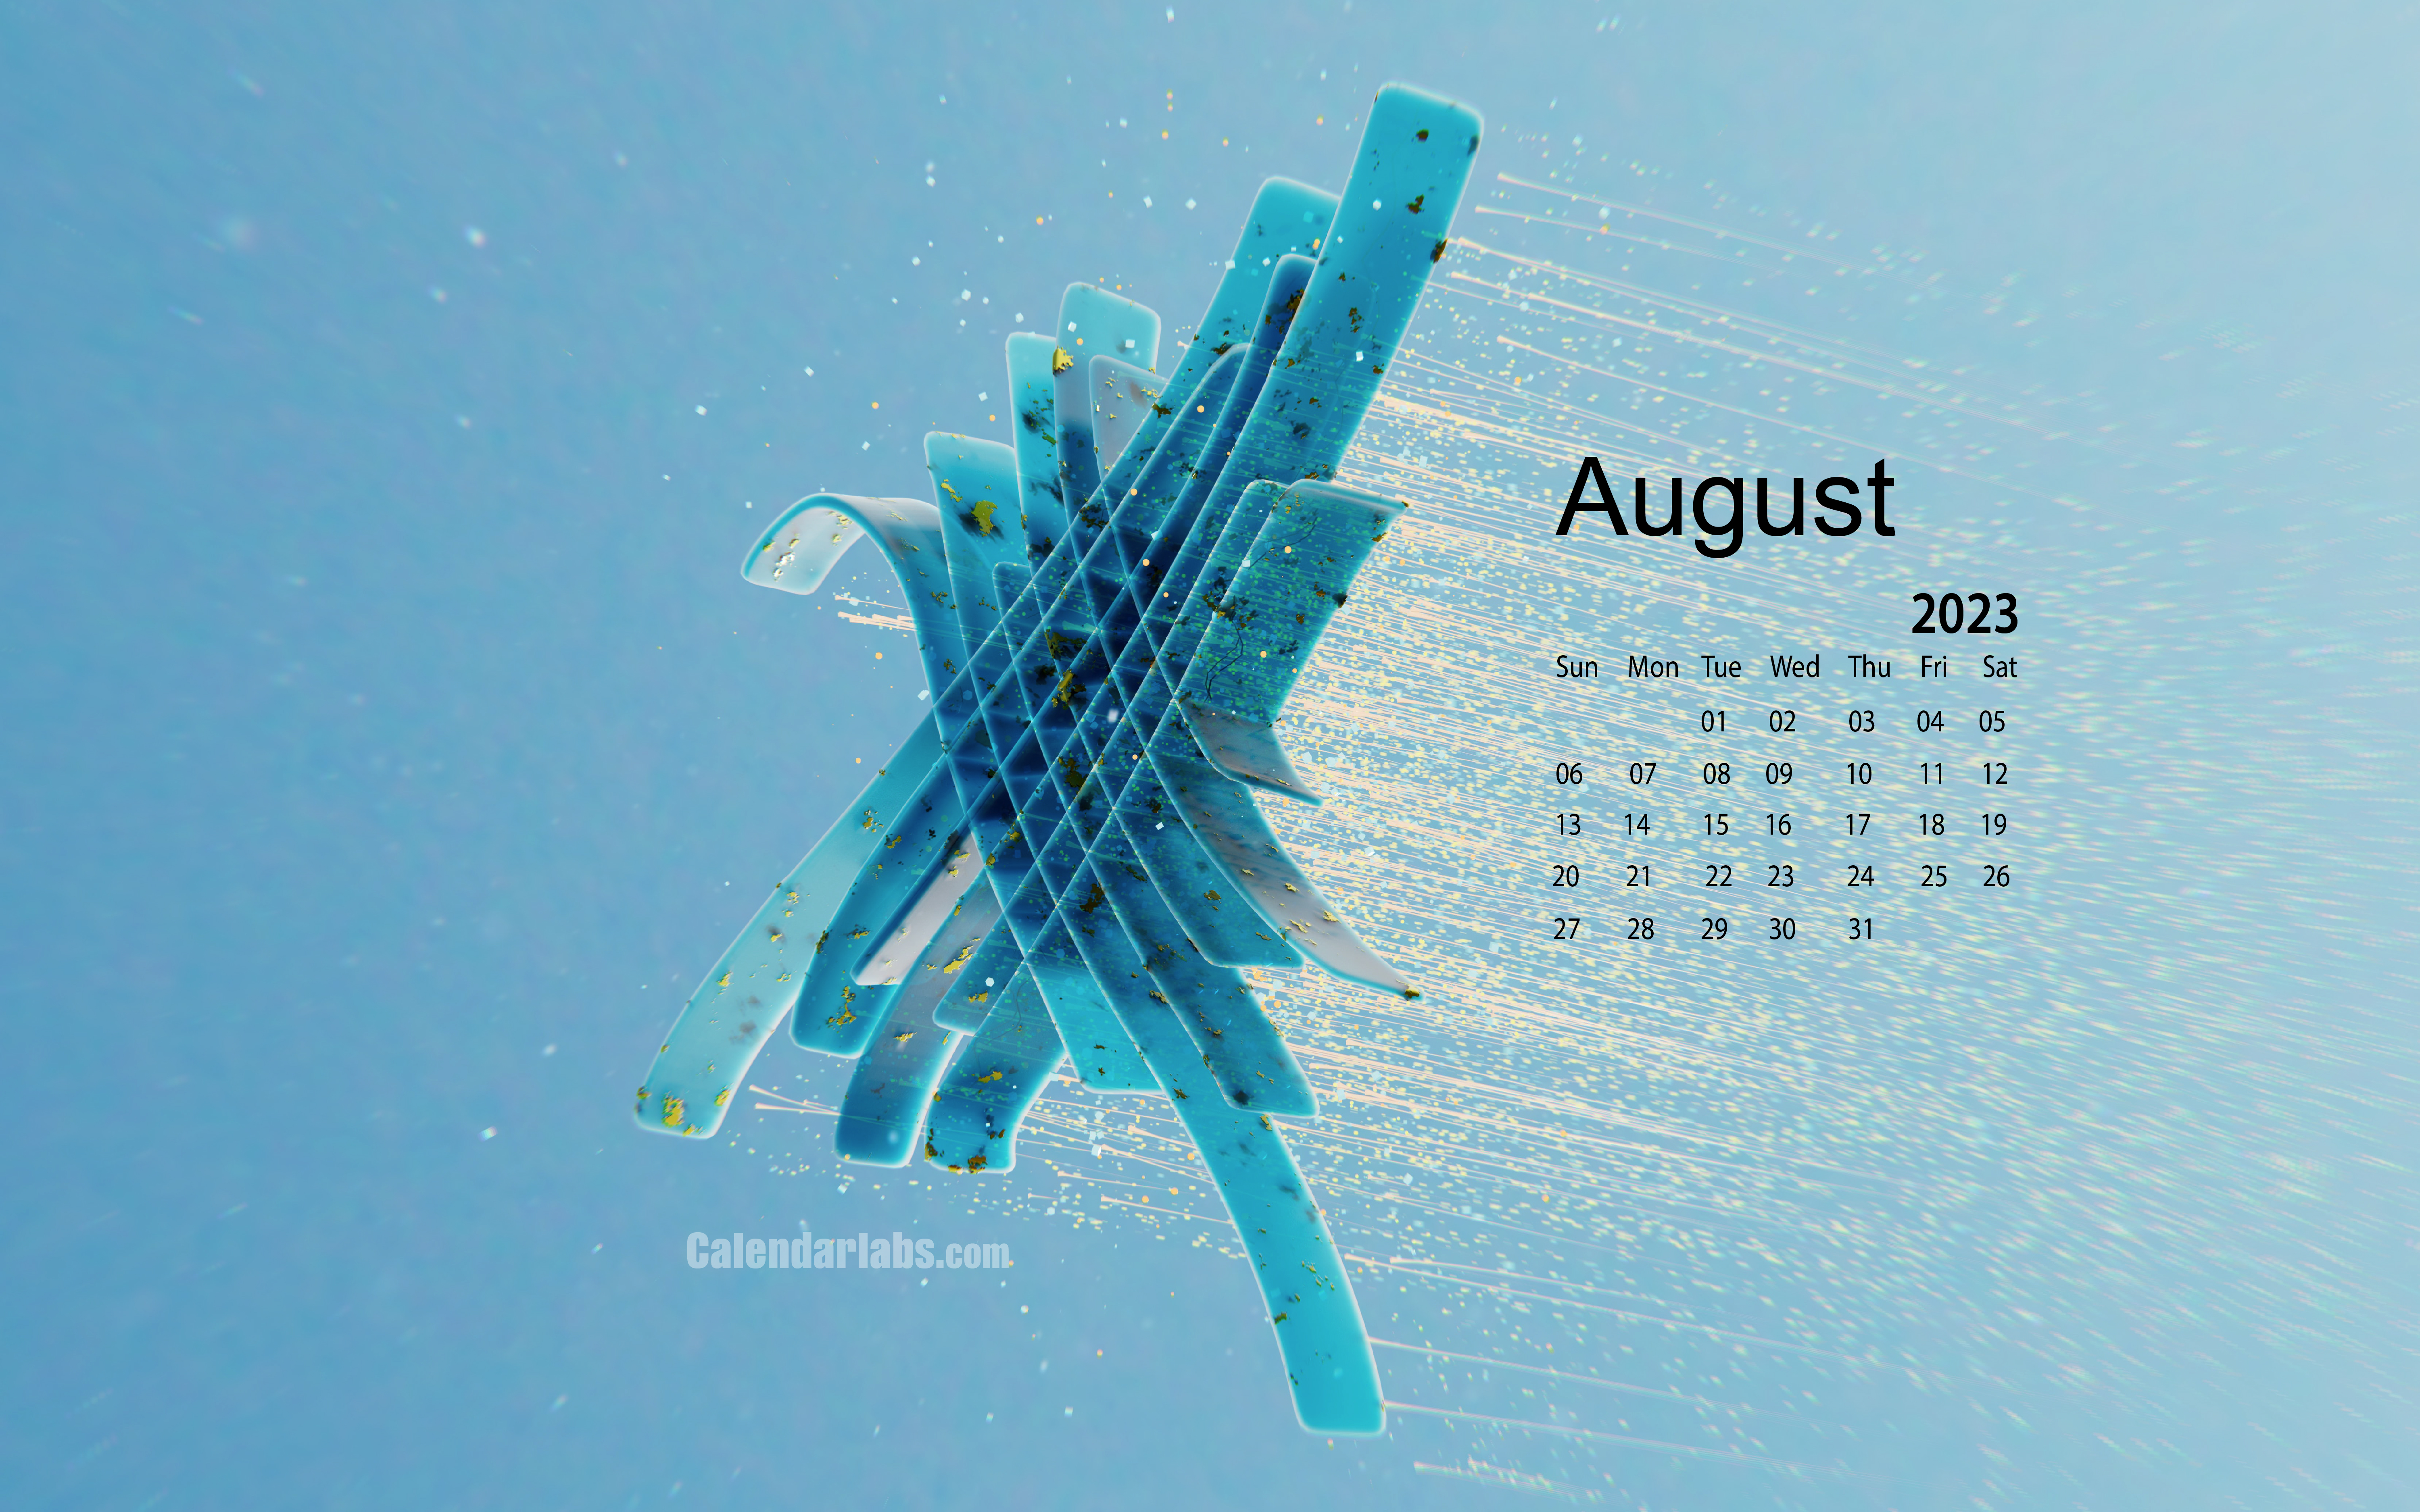 August 2023 Desktop Wallpaper Calendar